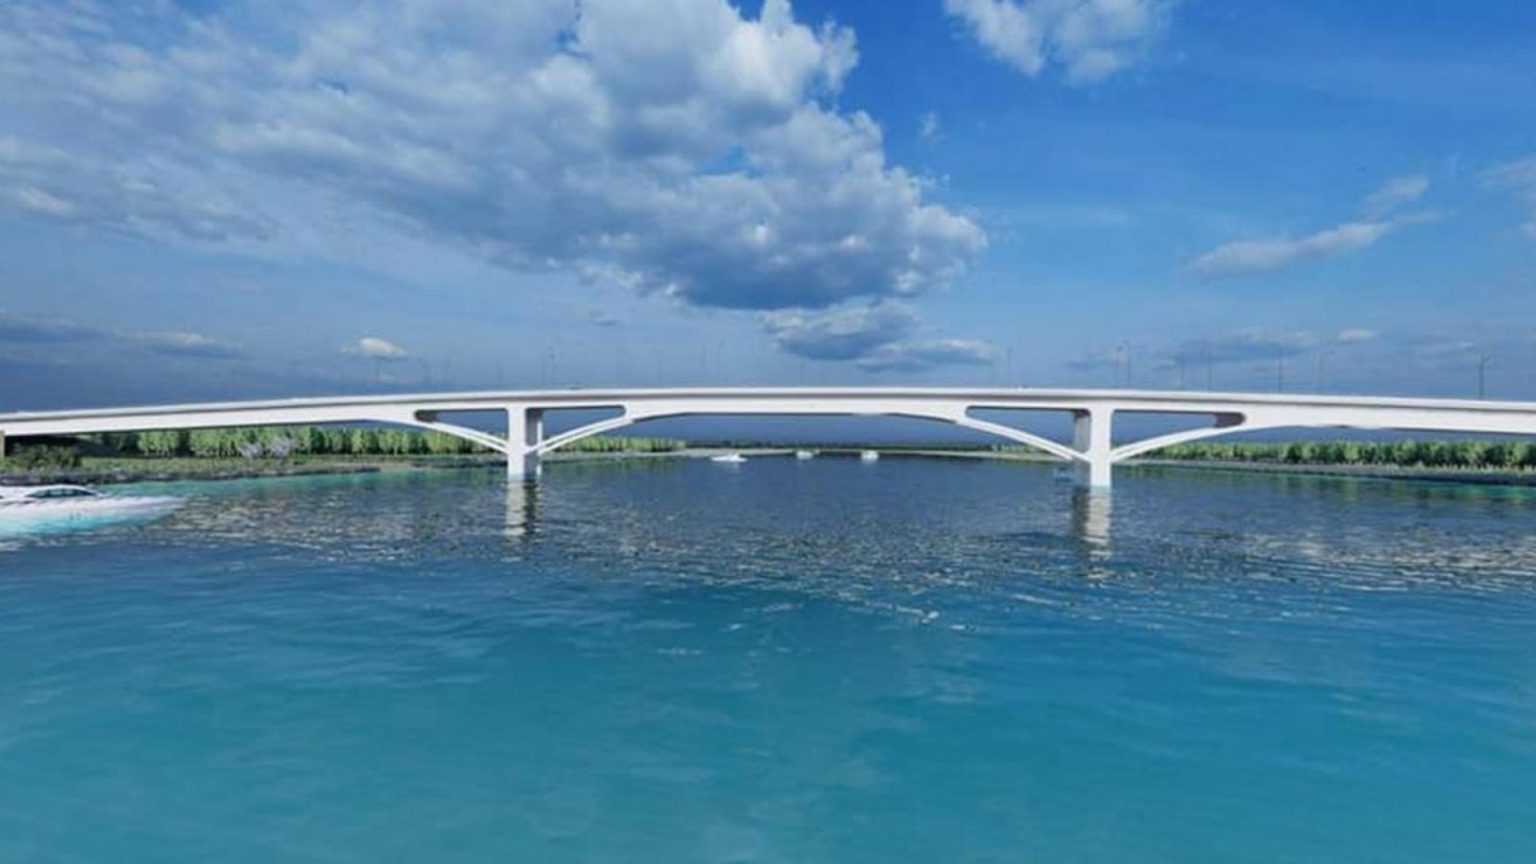 Η γέφυρα που θα ενώσει την Αλβανία με το Μαυροβούνιο - Το νέο «διαμάντι» των Βαλκανίων